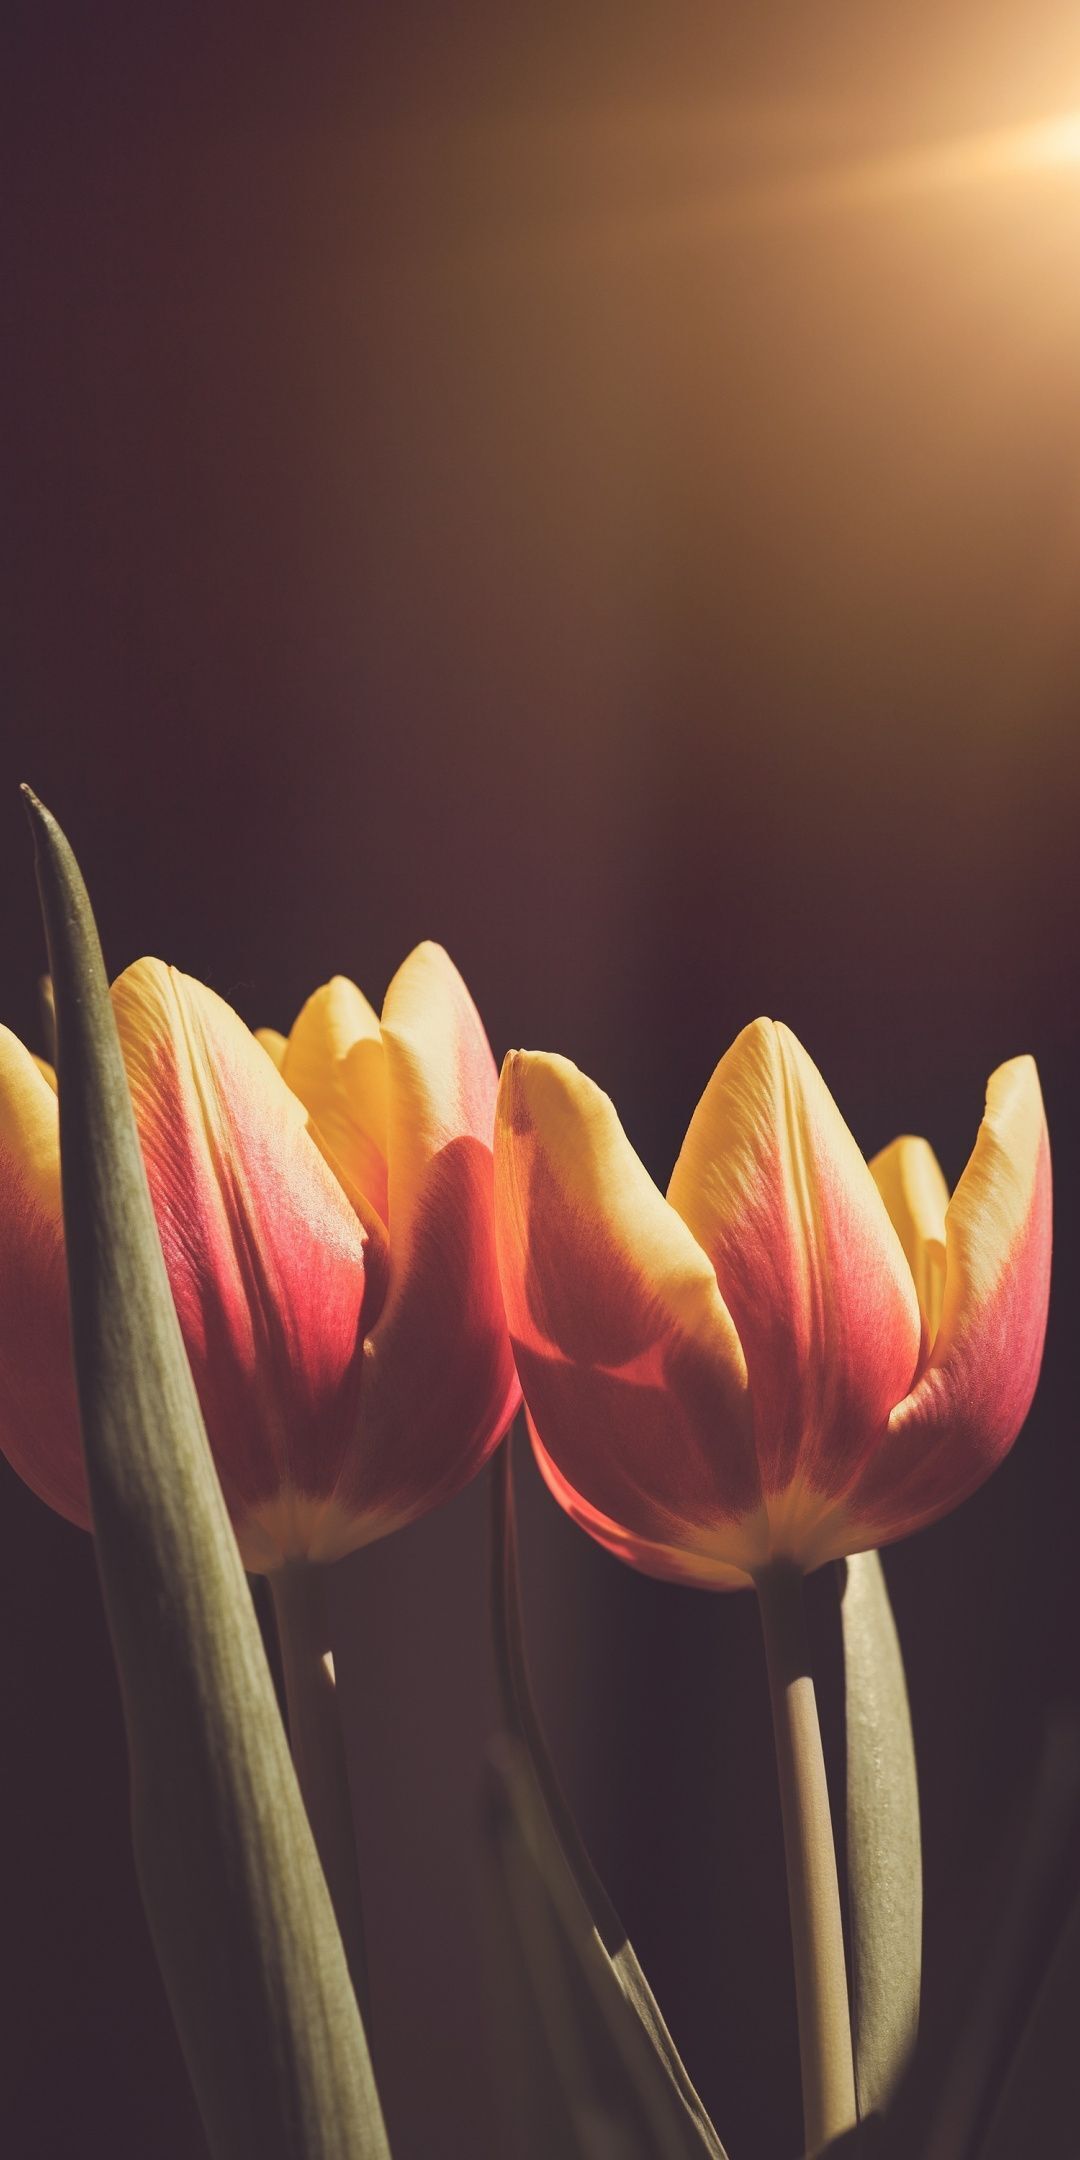 hinh nen hoa tulip 004